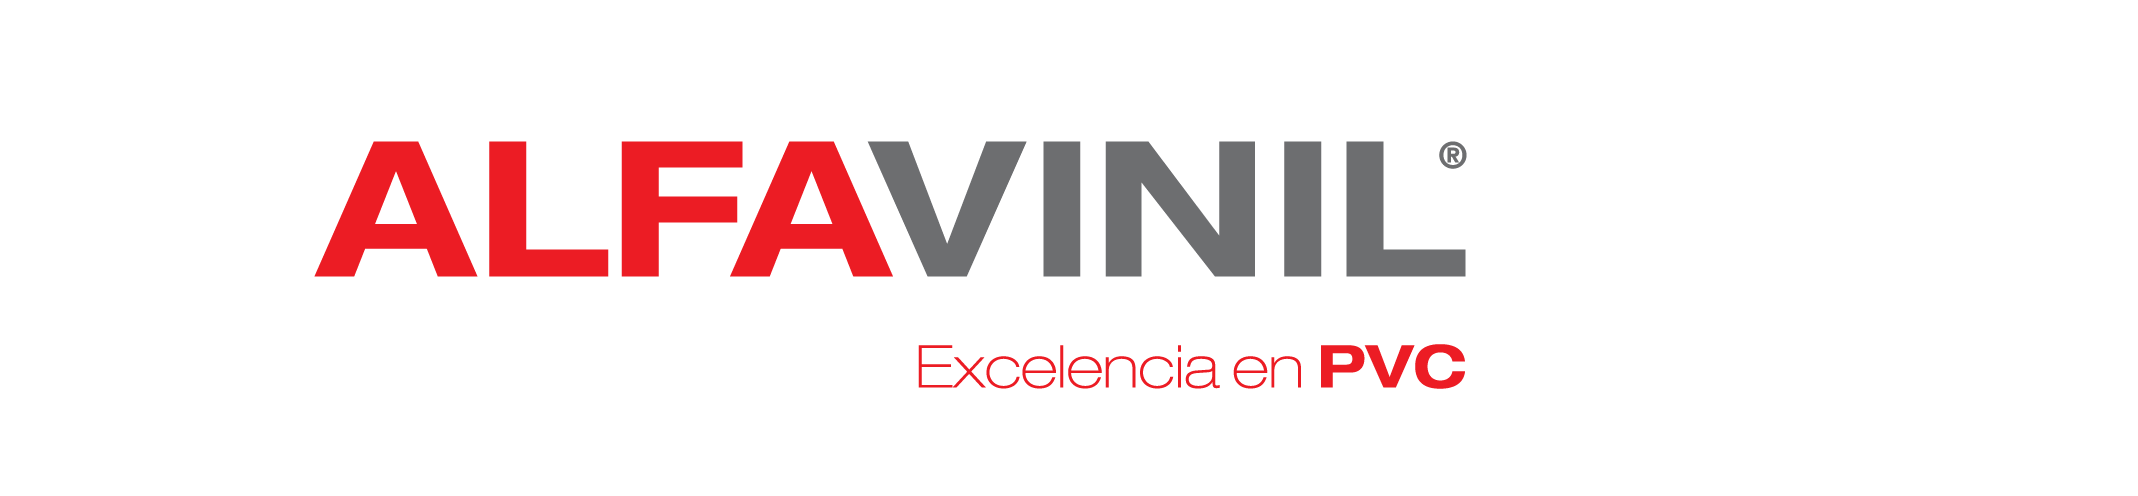 Logo Alfavinil